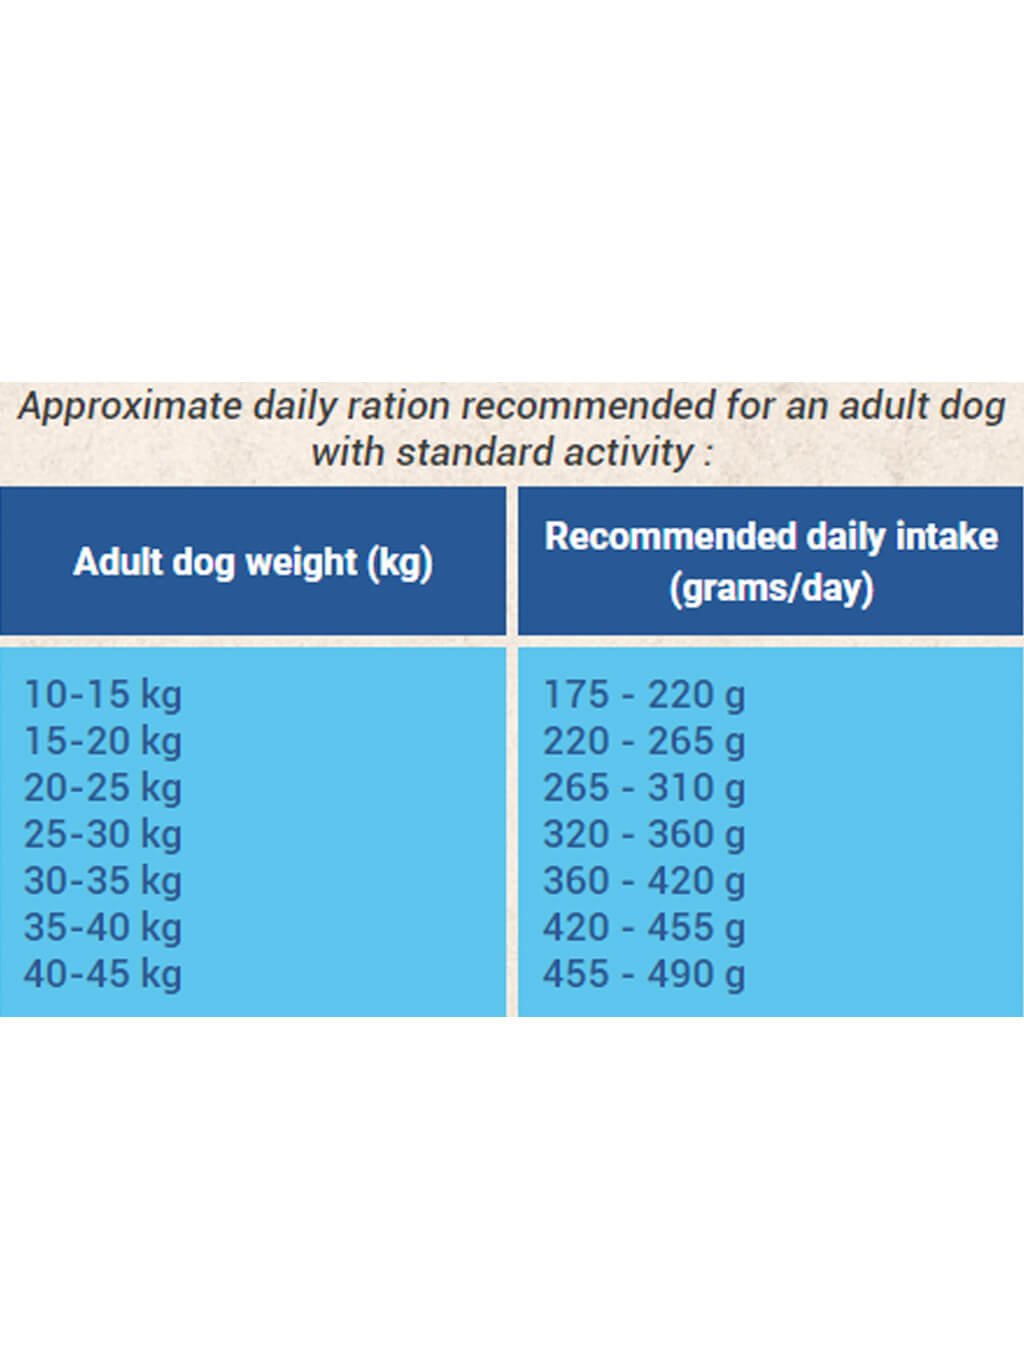 BON APPÉTIT DOG ADULT CHICKEN 12 kg + BON APPÉTIT DOG ADULT MAXI 12 kg - cenově výhodné dvojbalení krmiv pro dospělé psy v kombinaci pro psy středních plemen a psy velkých plemen